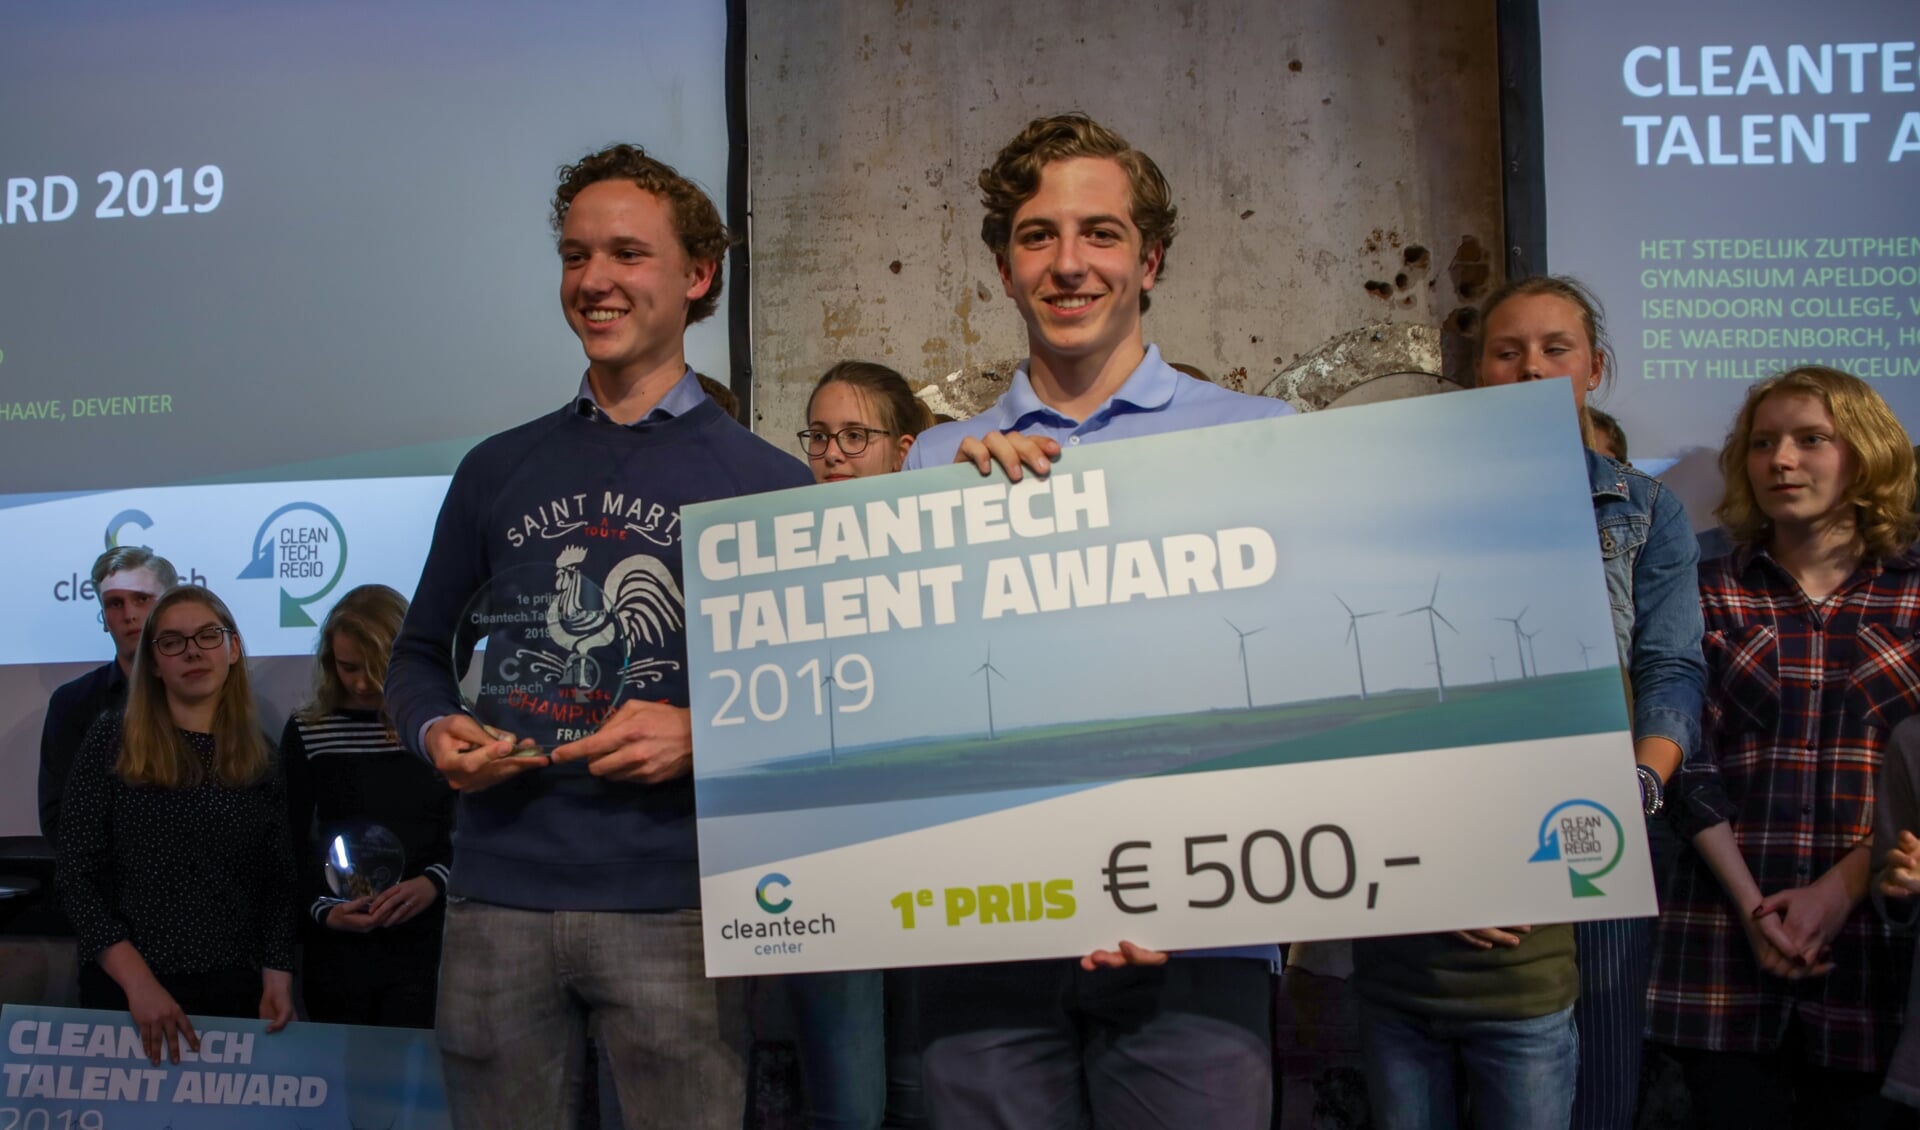 Joep Ligthart en Flip van Tongeren van het Isendoorn College zijn de winnaars van de Talent Award 2019. Foto: PR